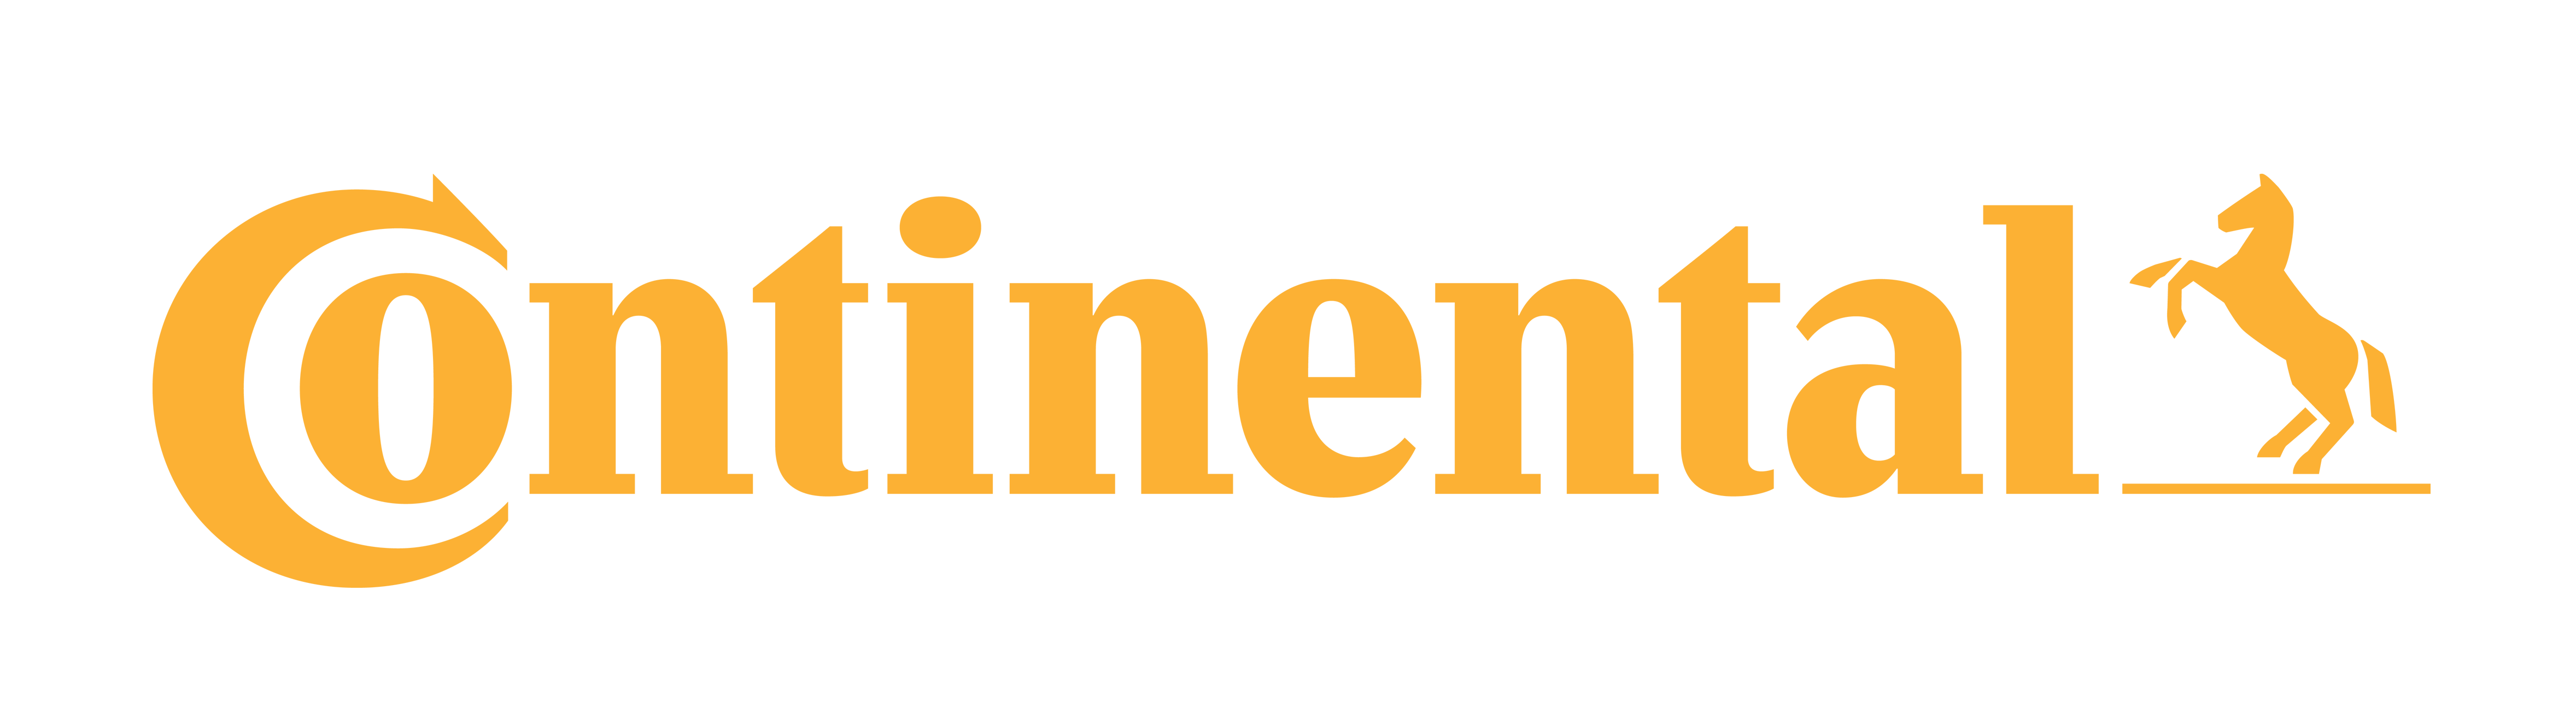 Continental Vector Logo | Fre